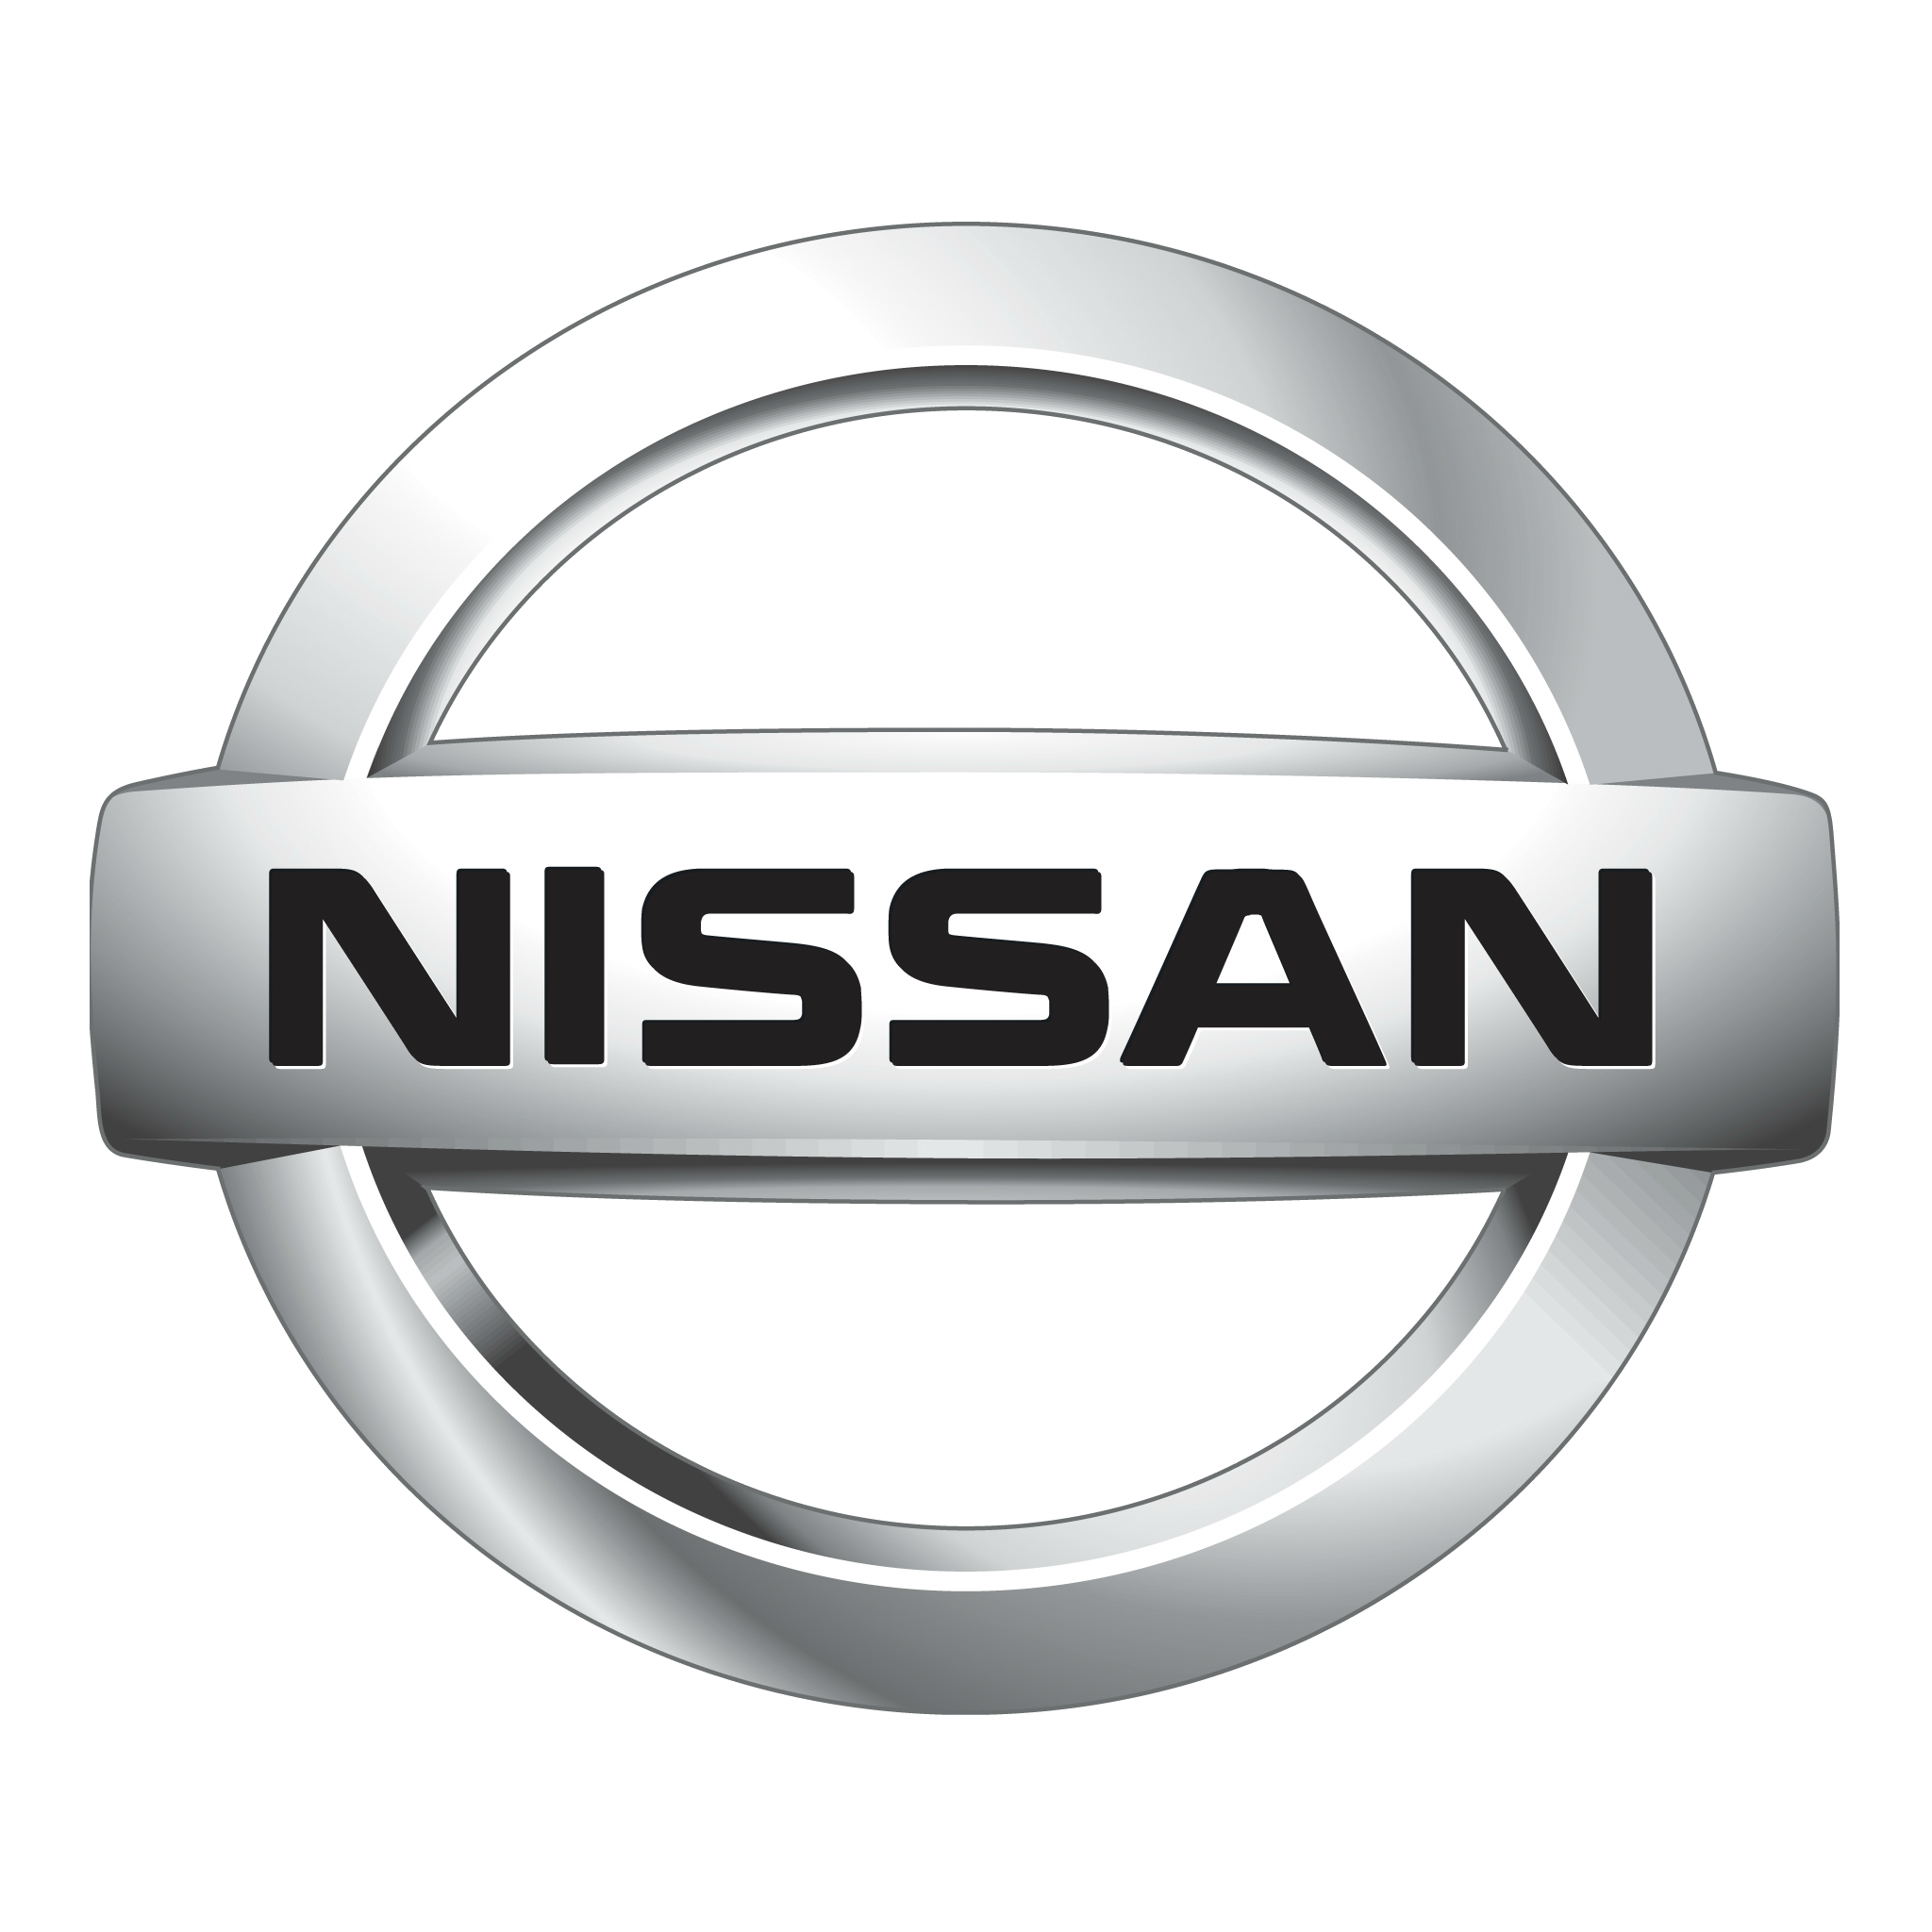 Nissan Symbol 1920x1080 (HD 1